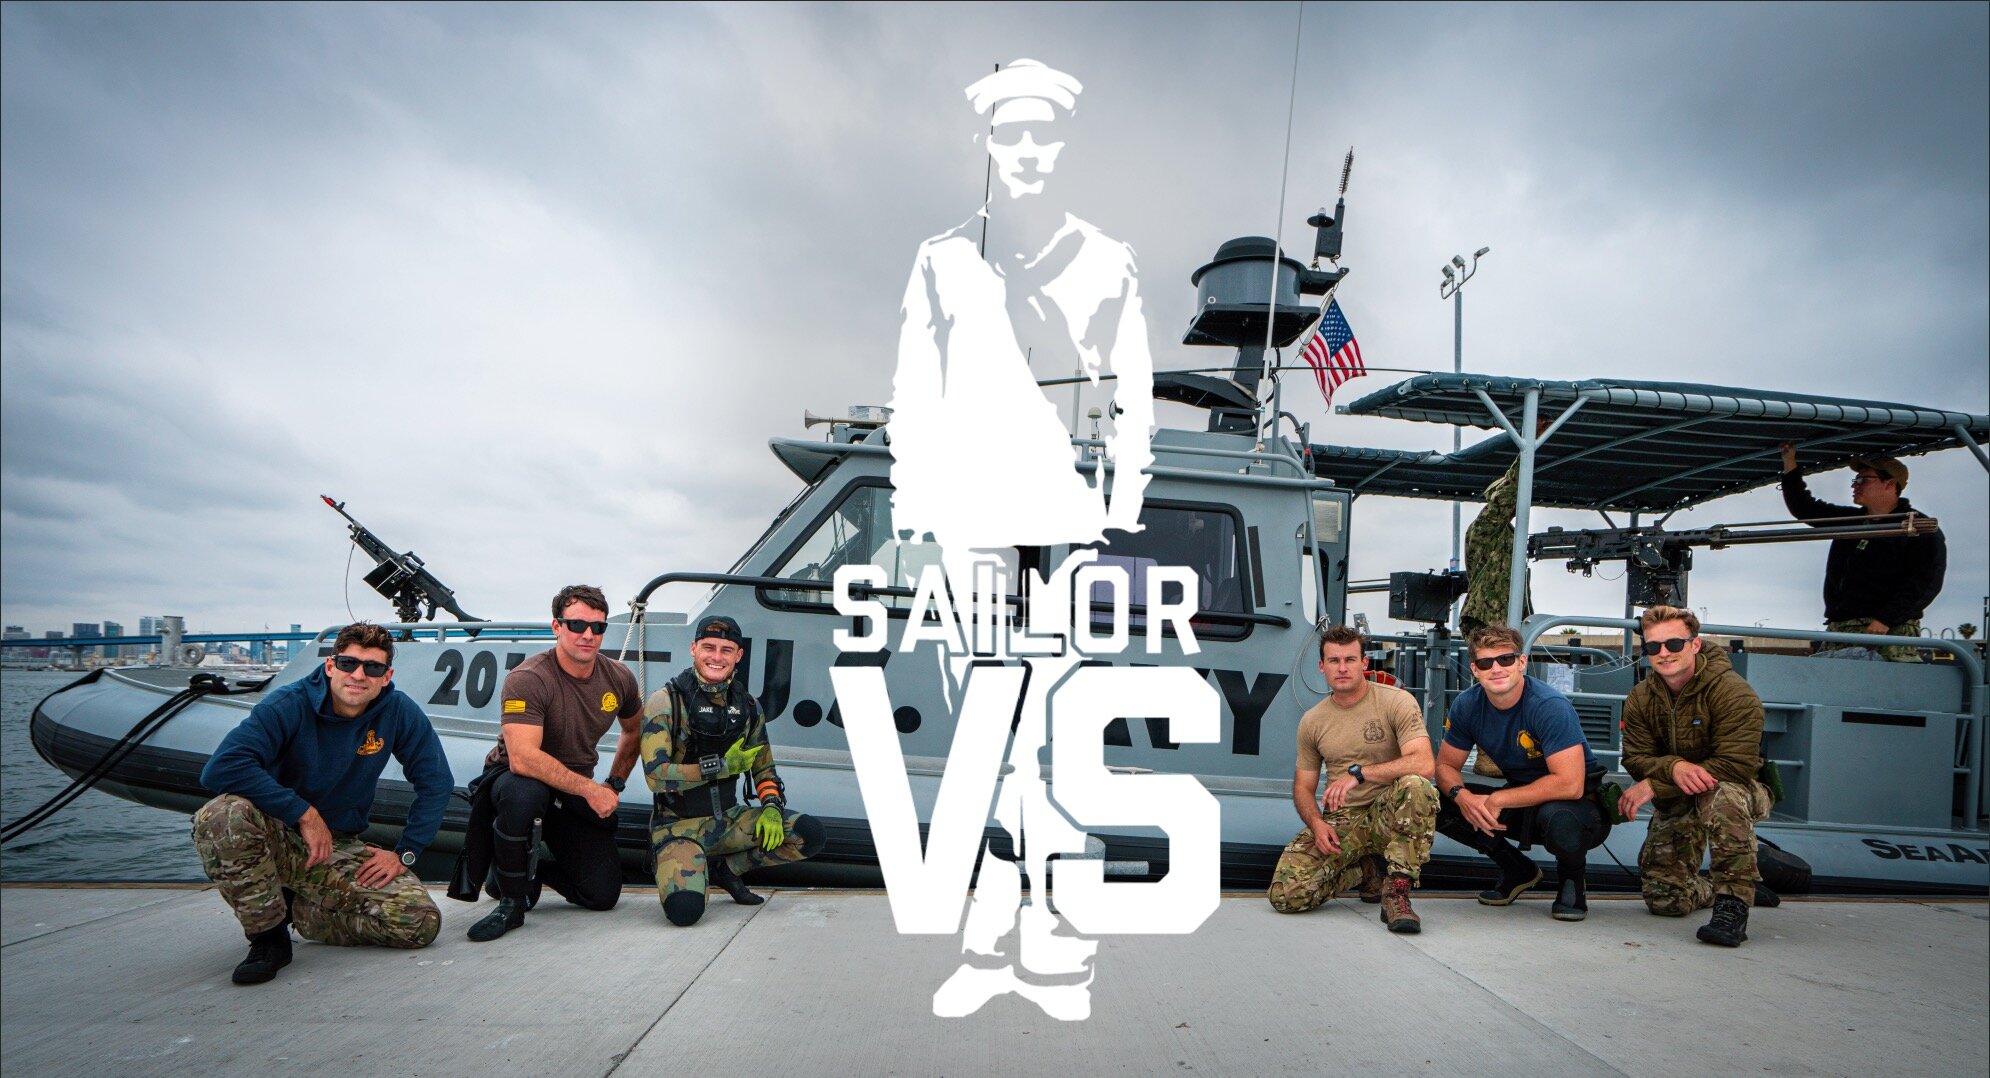 Sailor VS poster.jpg